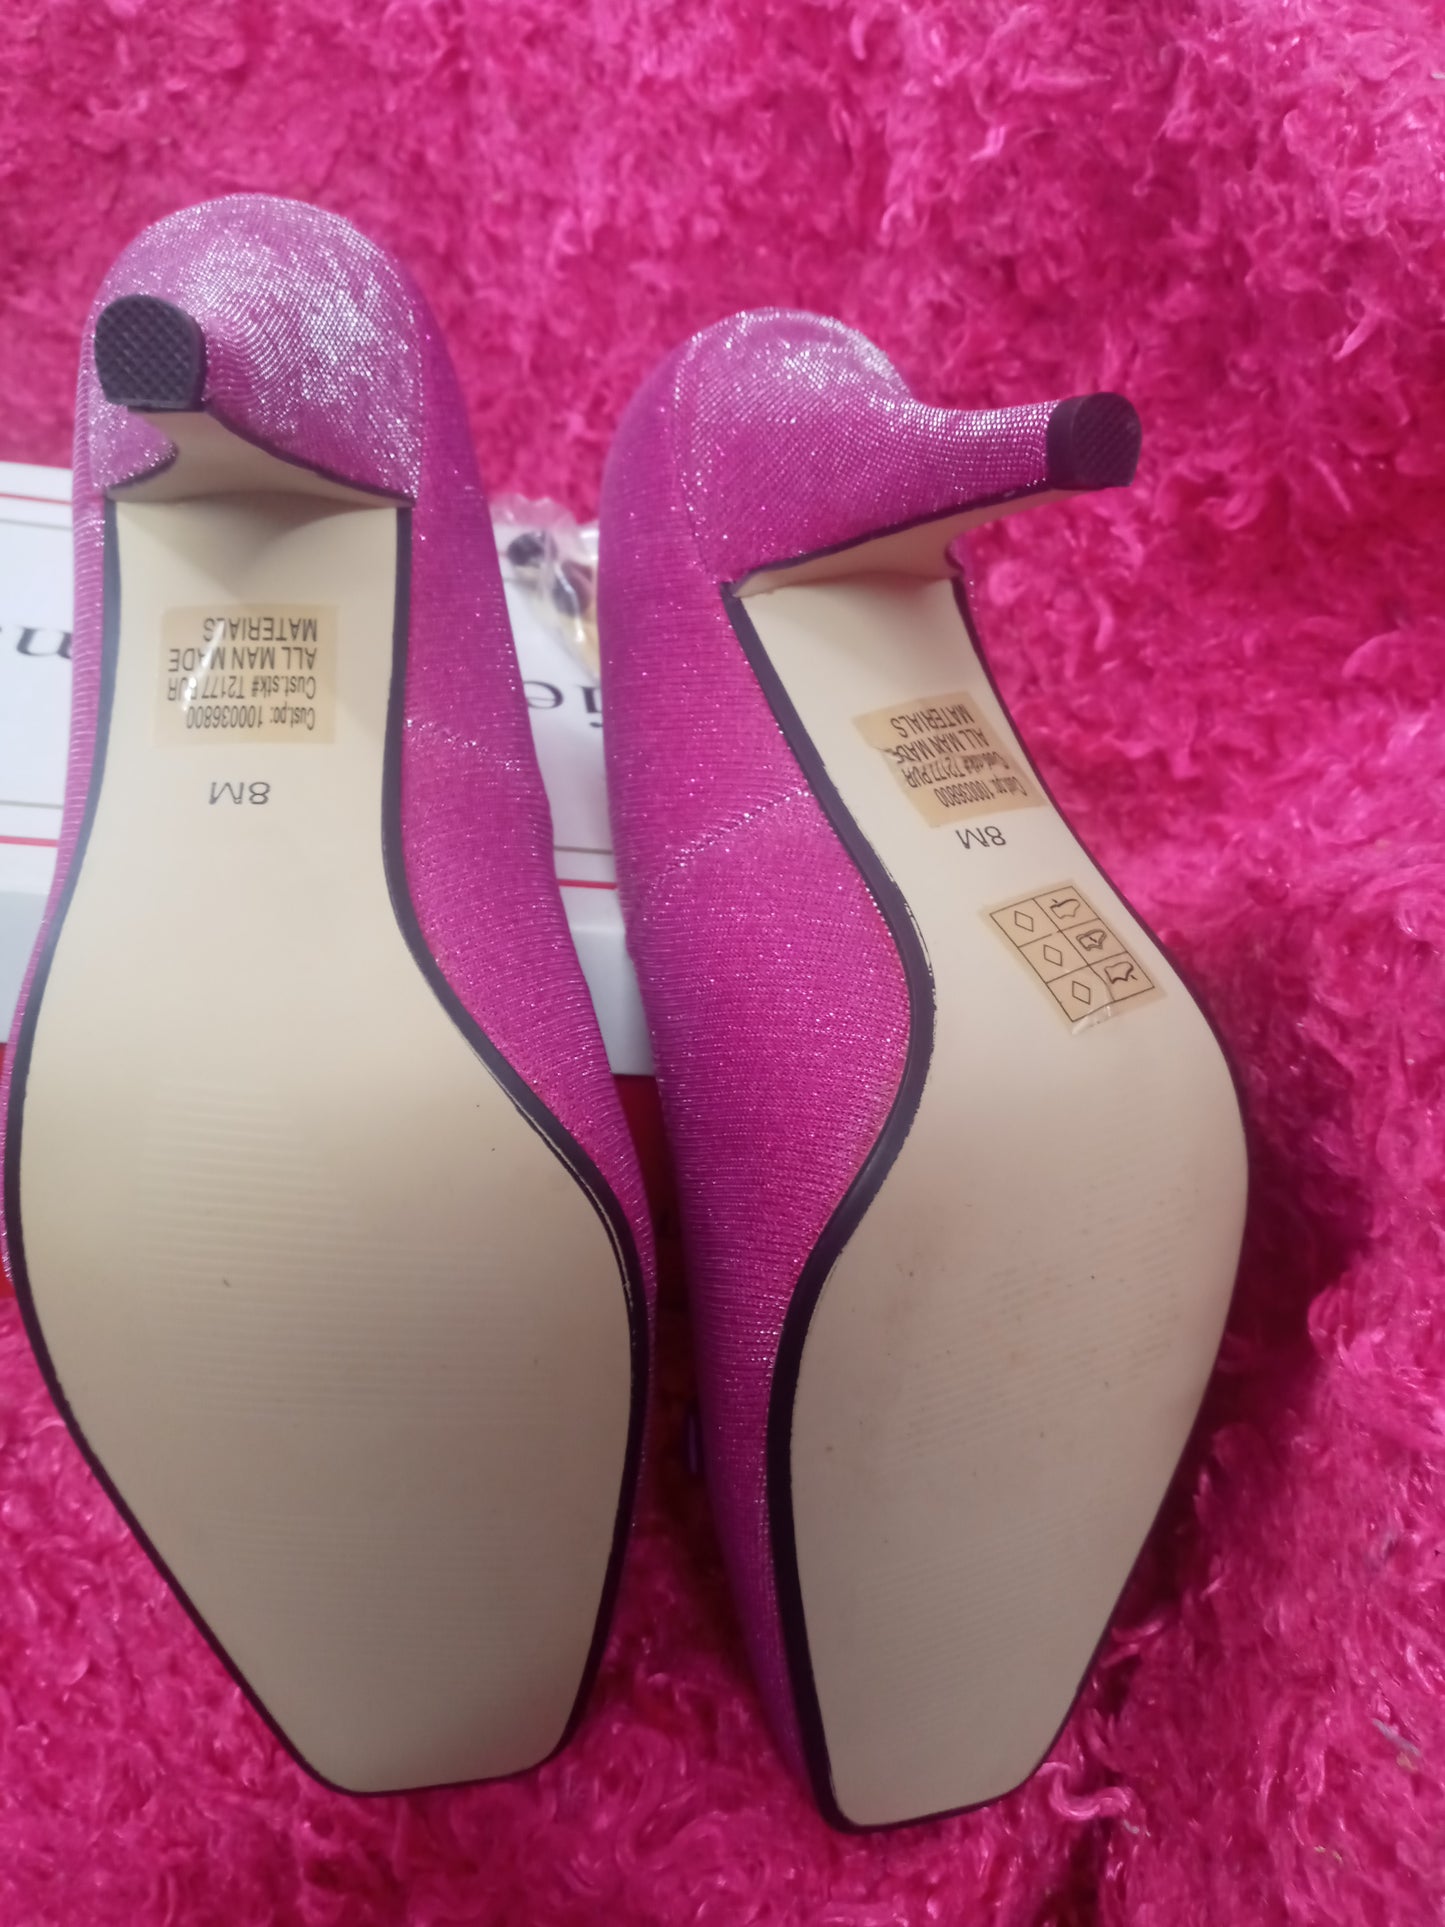 Womans  Bow & Stone Detail Pump Dress Shoe Size 8M Color Purple